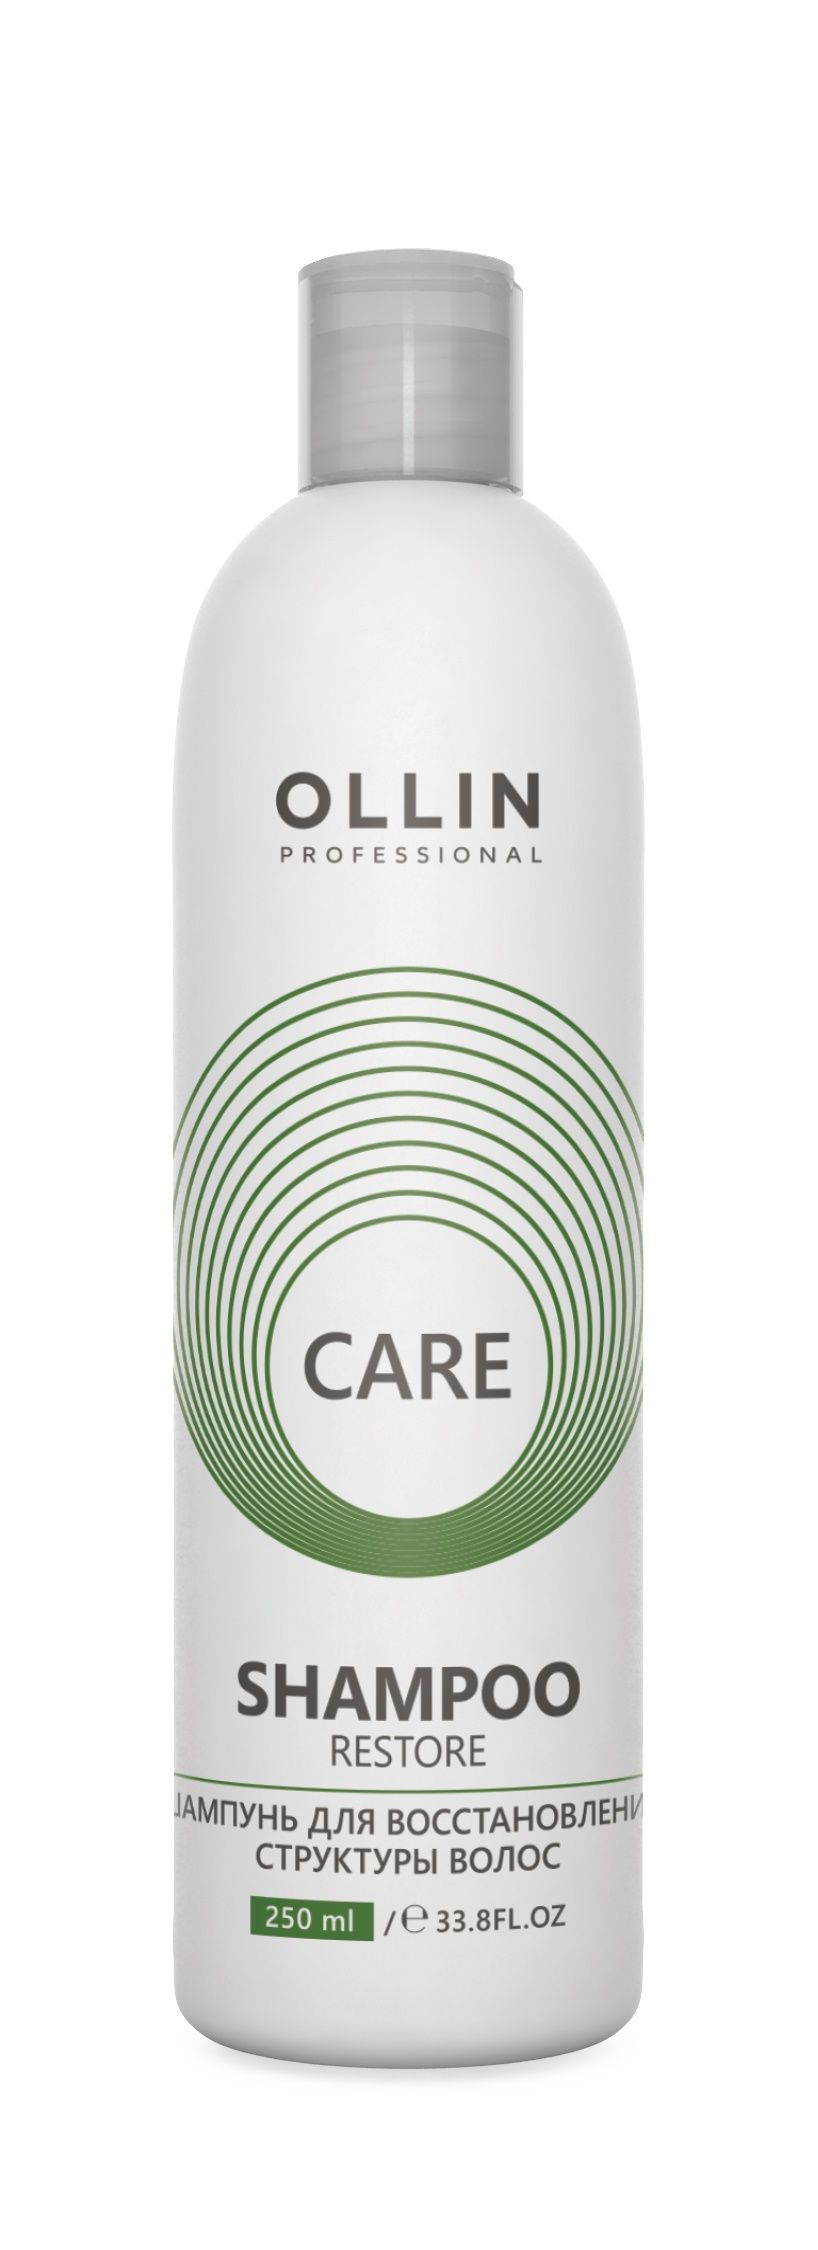 Ollin, Шампунь для восстановления структуры волос серии «Care», Фото интернет-магазин Премиум-Косметика.РФ